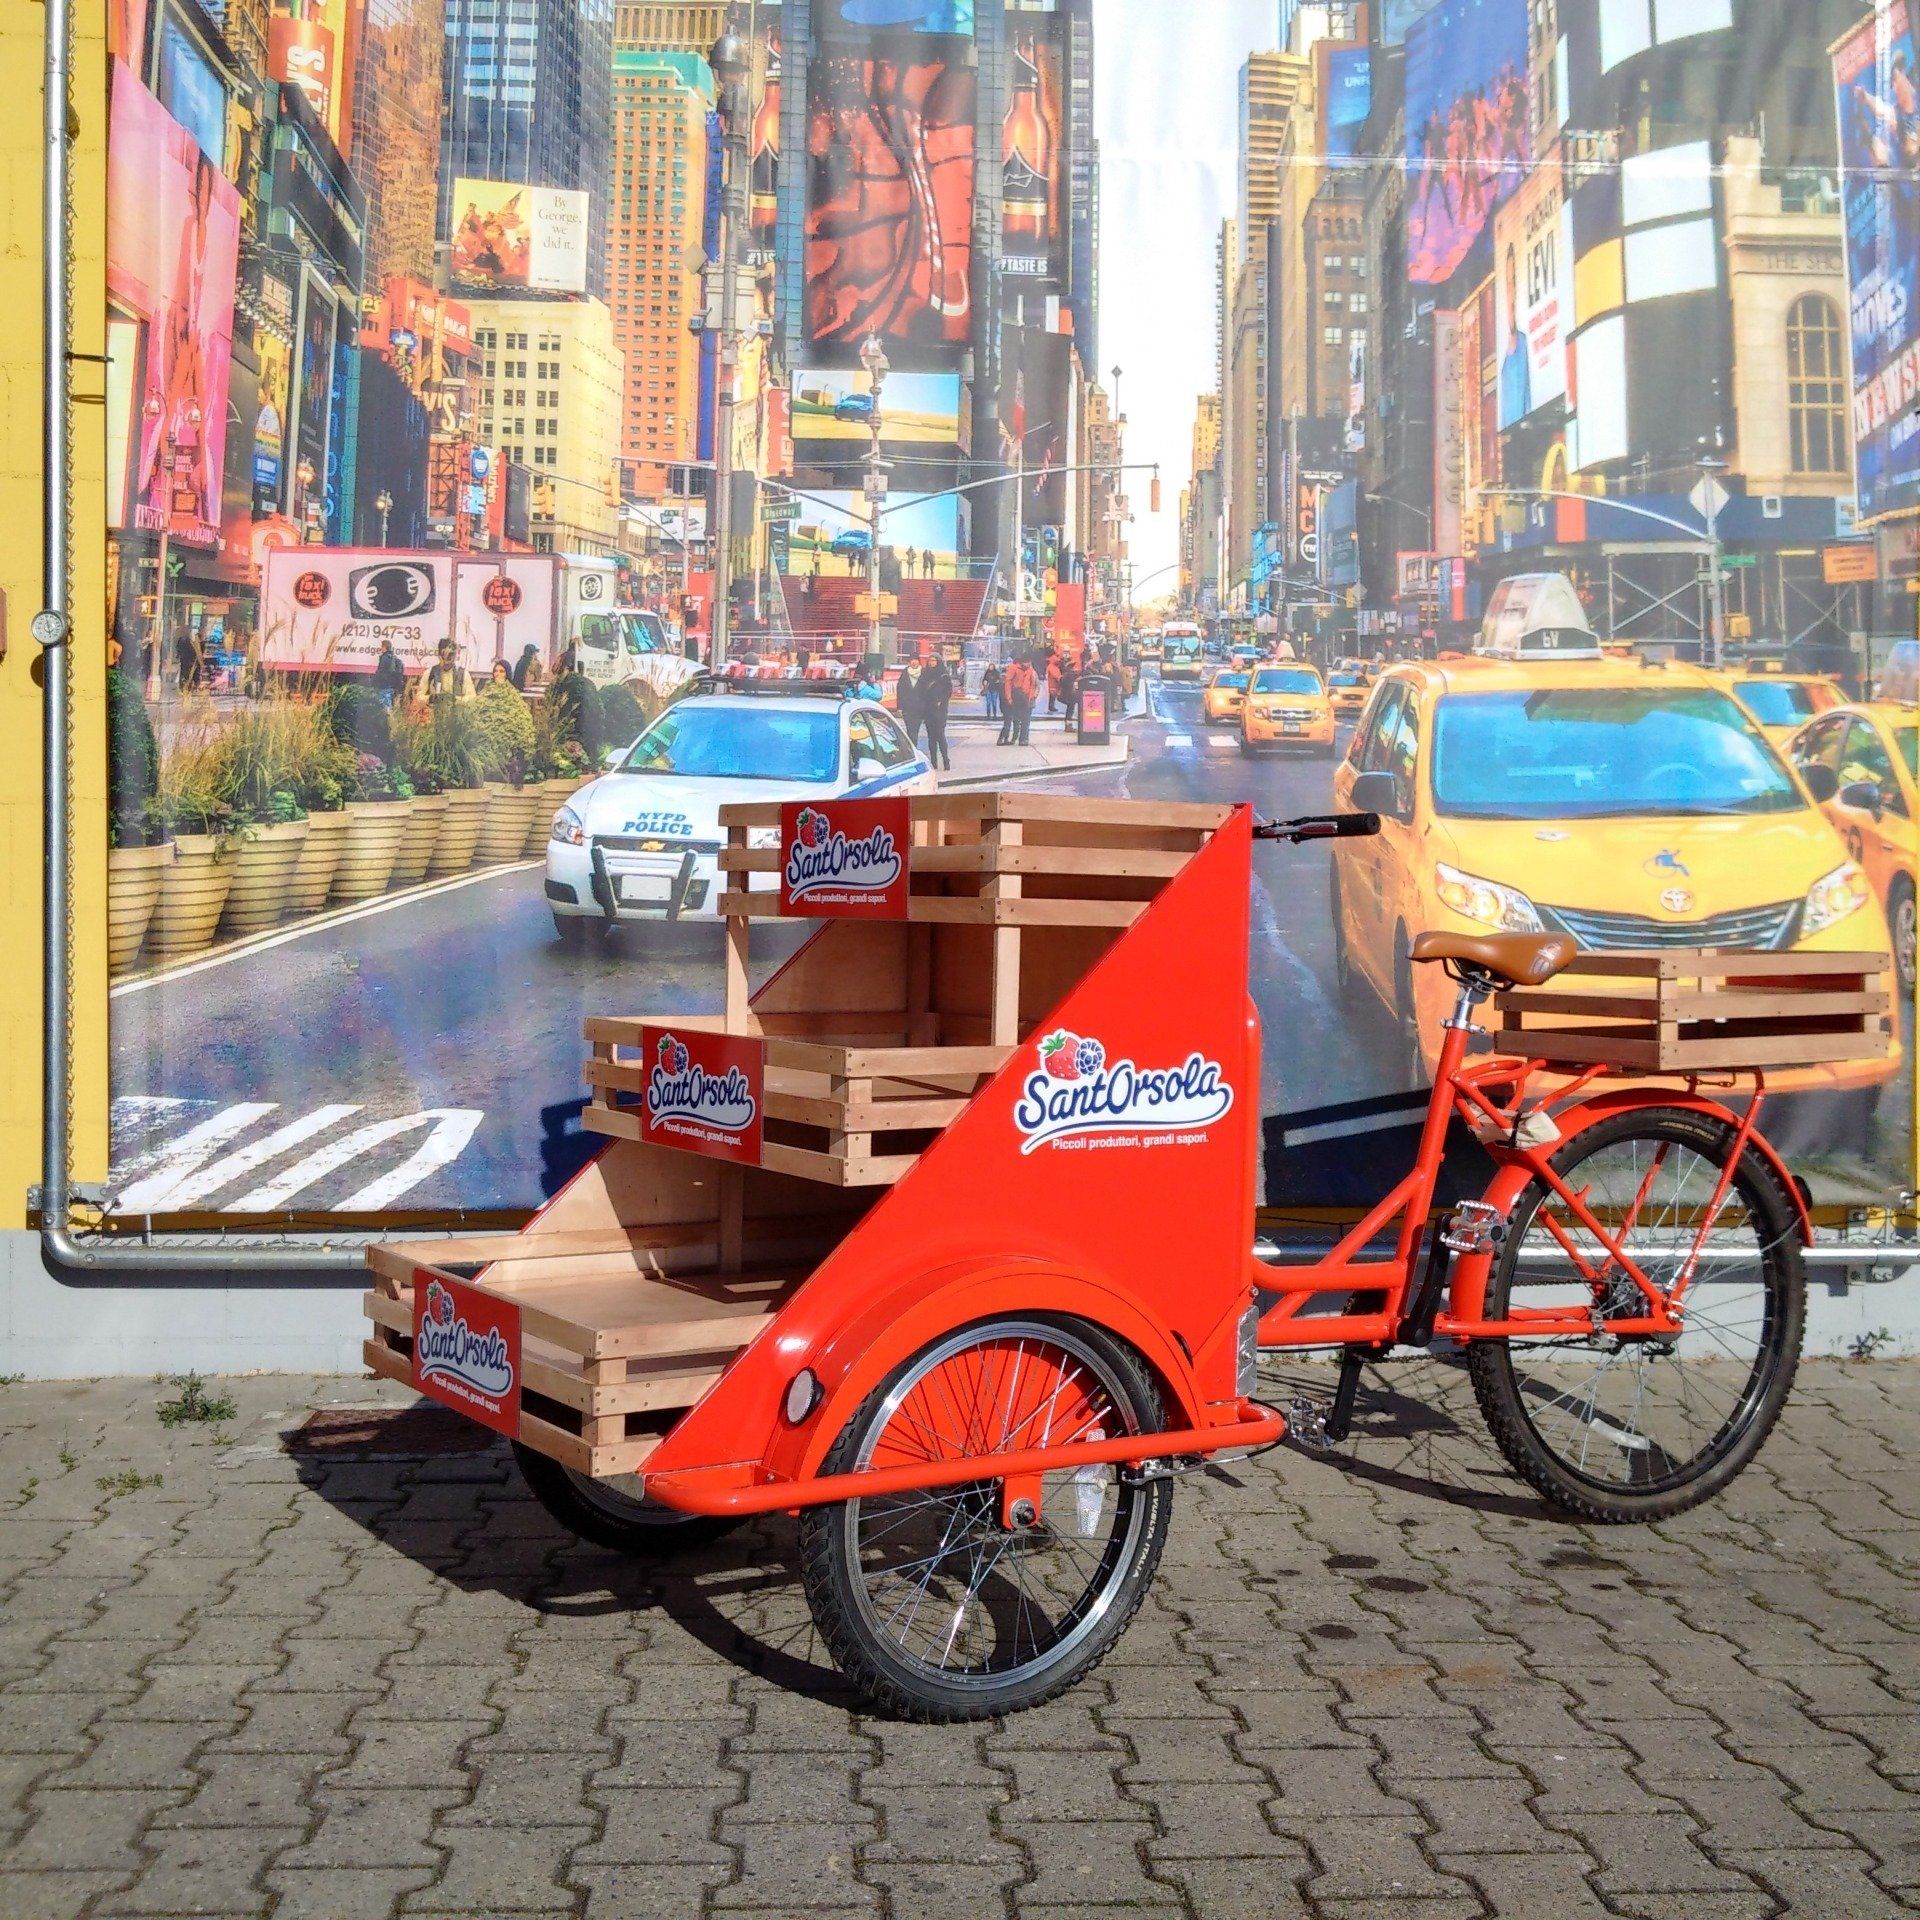 triciclo Cargo bike pubblicitario promozione prodotti